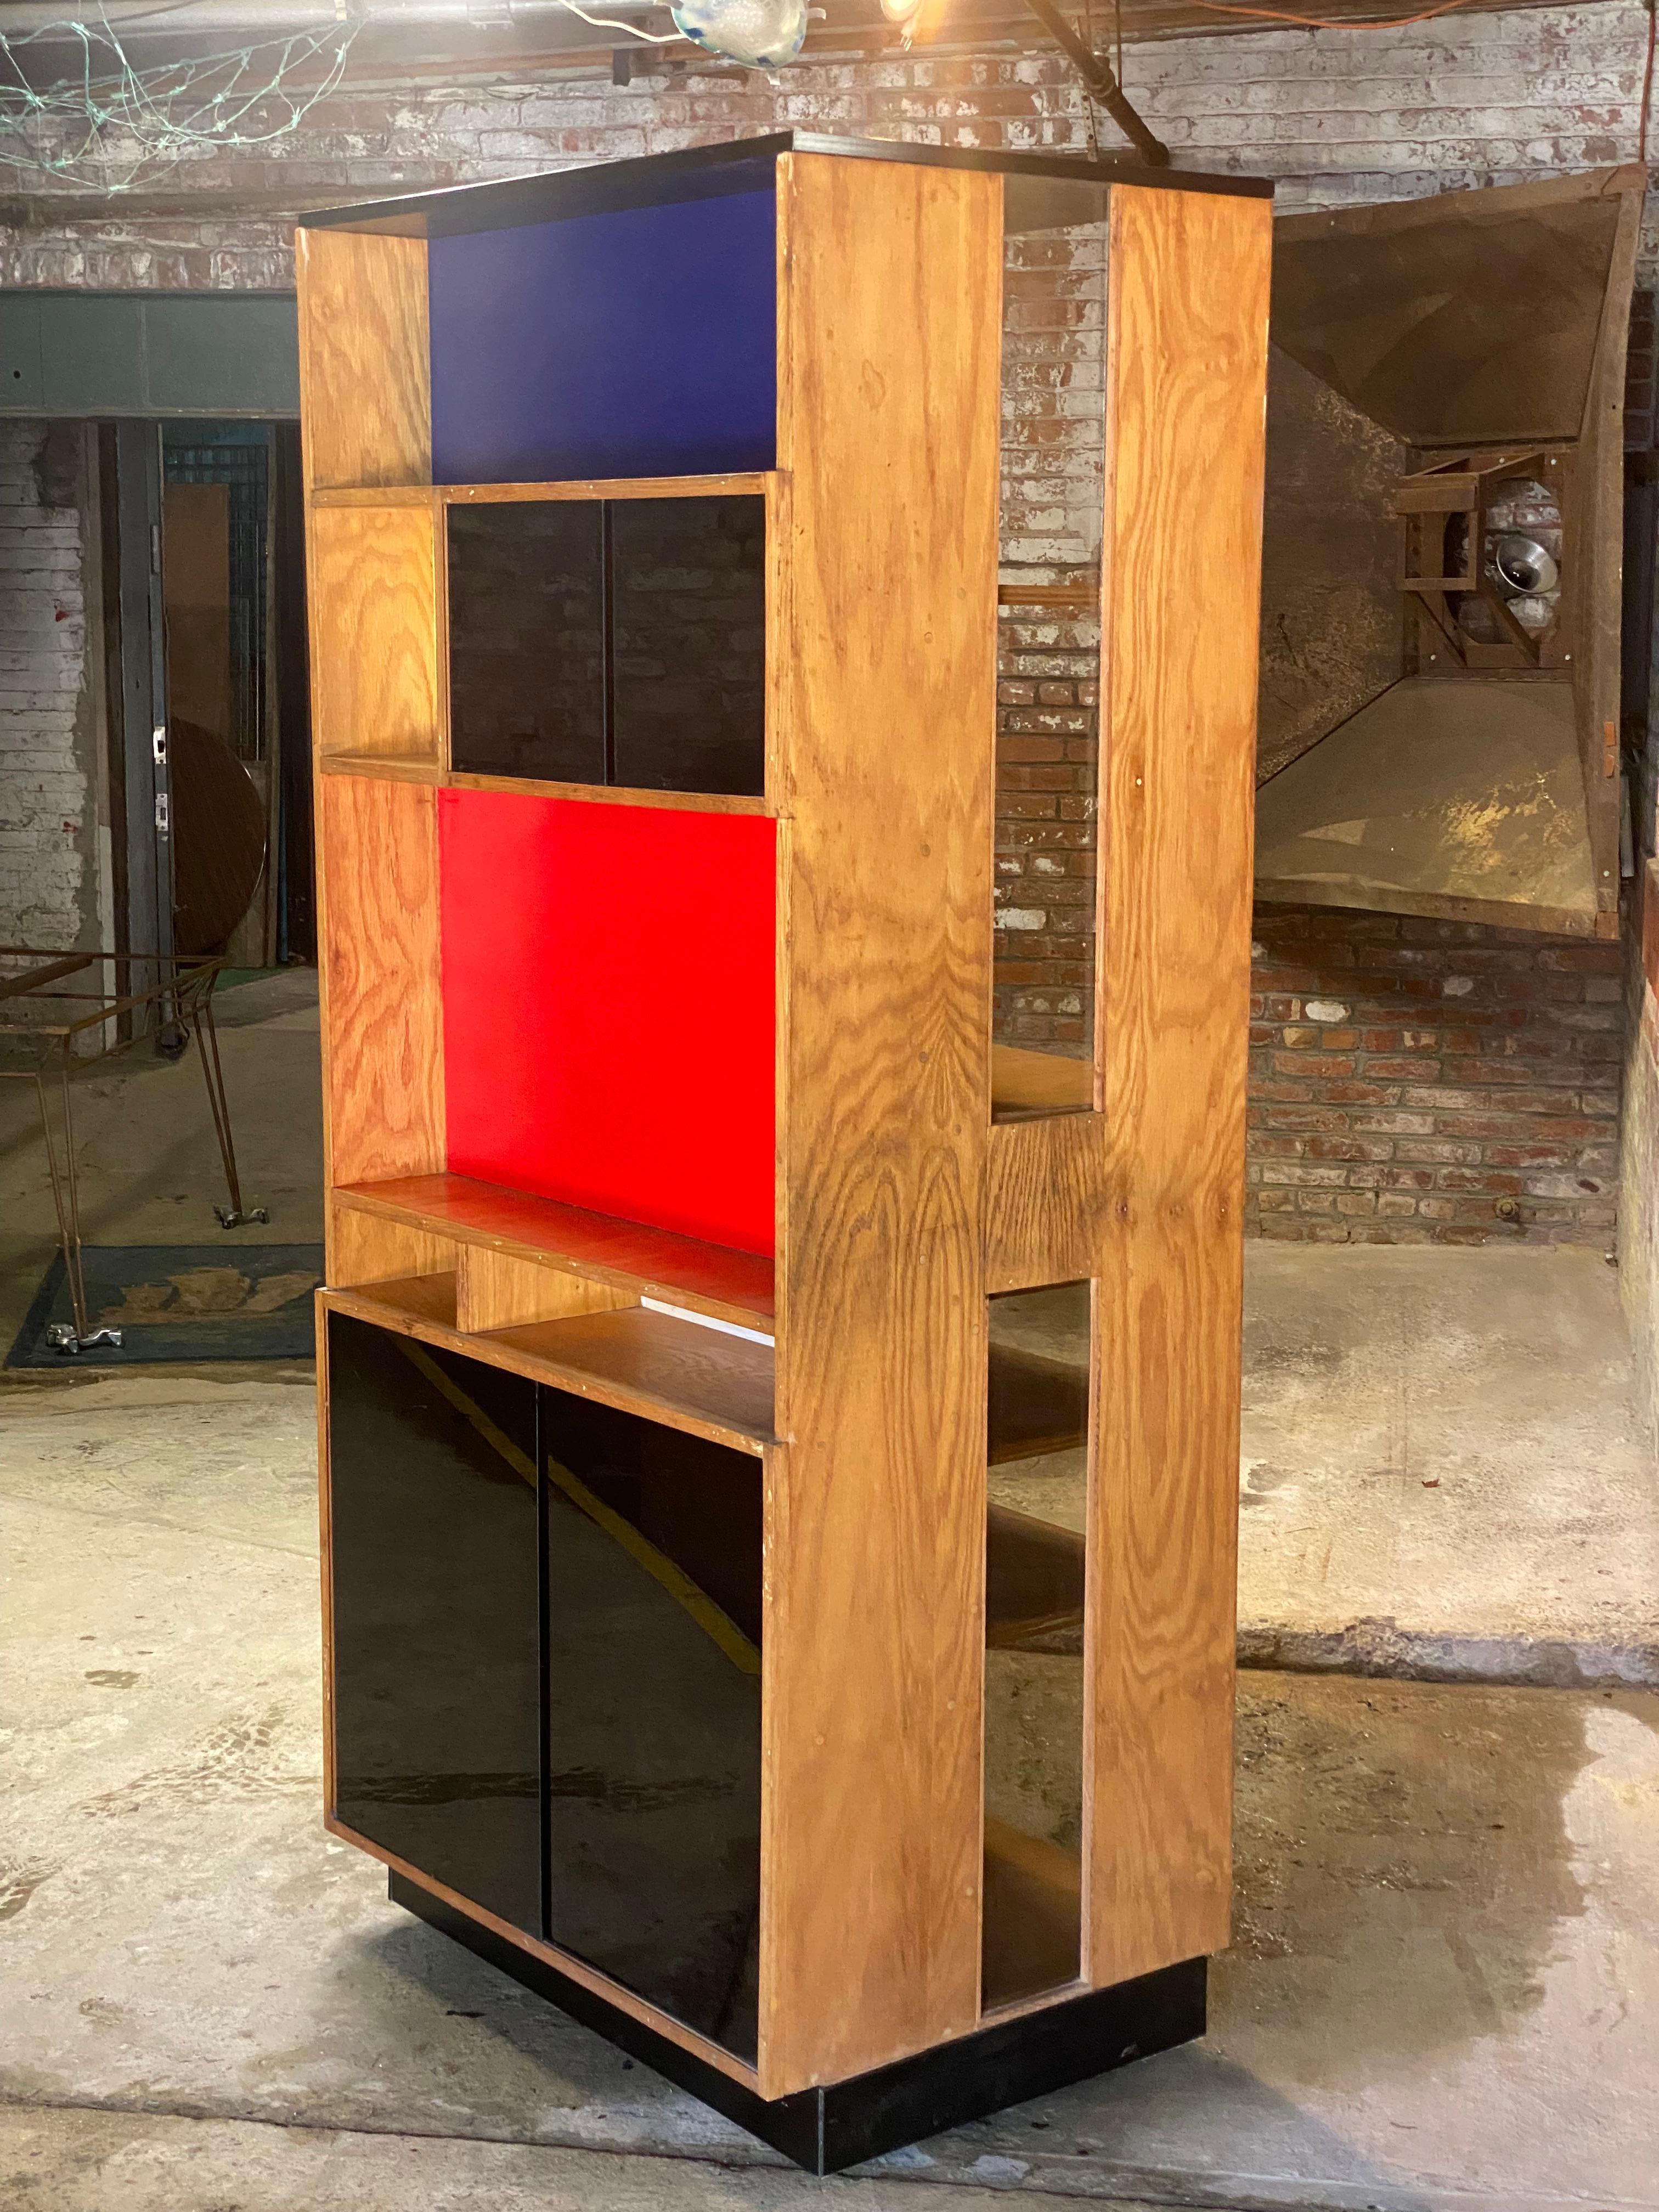 Ce meuble utilitaire merveilleusement construit est la création de l'artiste Leonard Buzz Wallace (1932-2021), originaire du nord de l'État de New York. Dans les années 1950-1990, Wallace a été un artiste et un enseignant accompli, travaillant dans